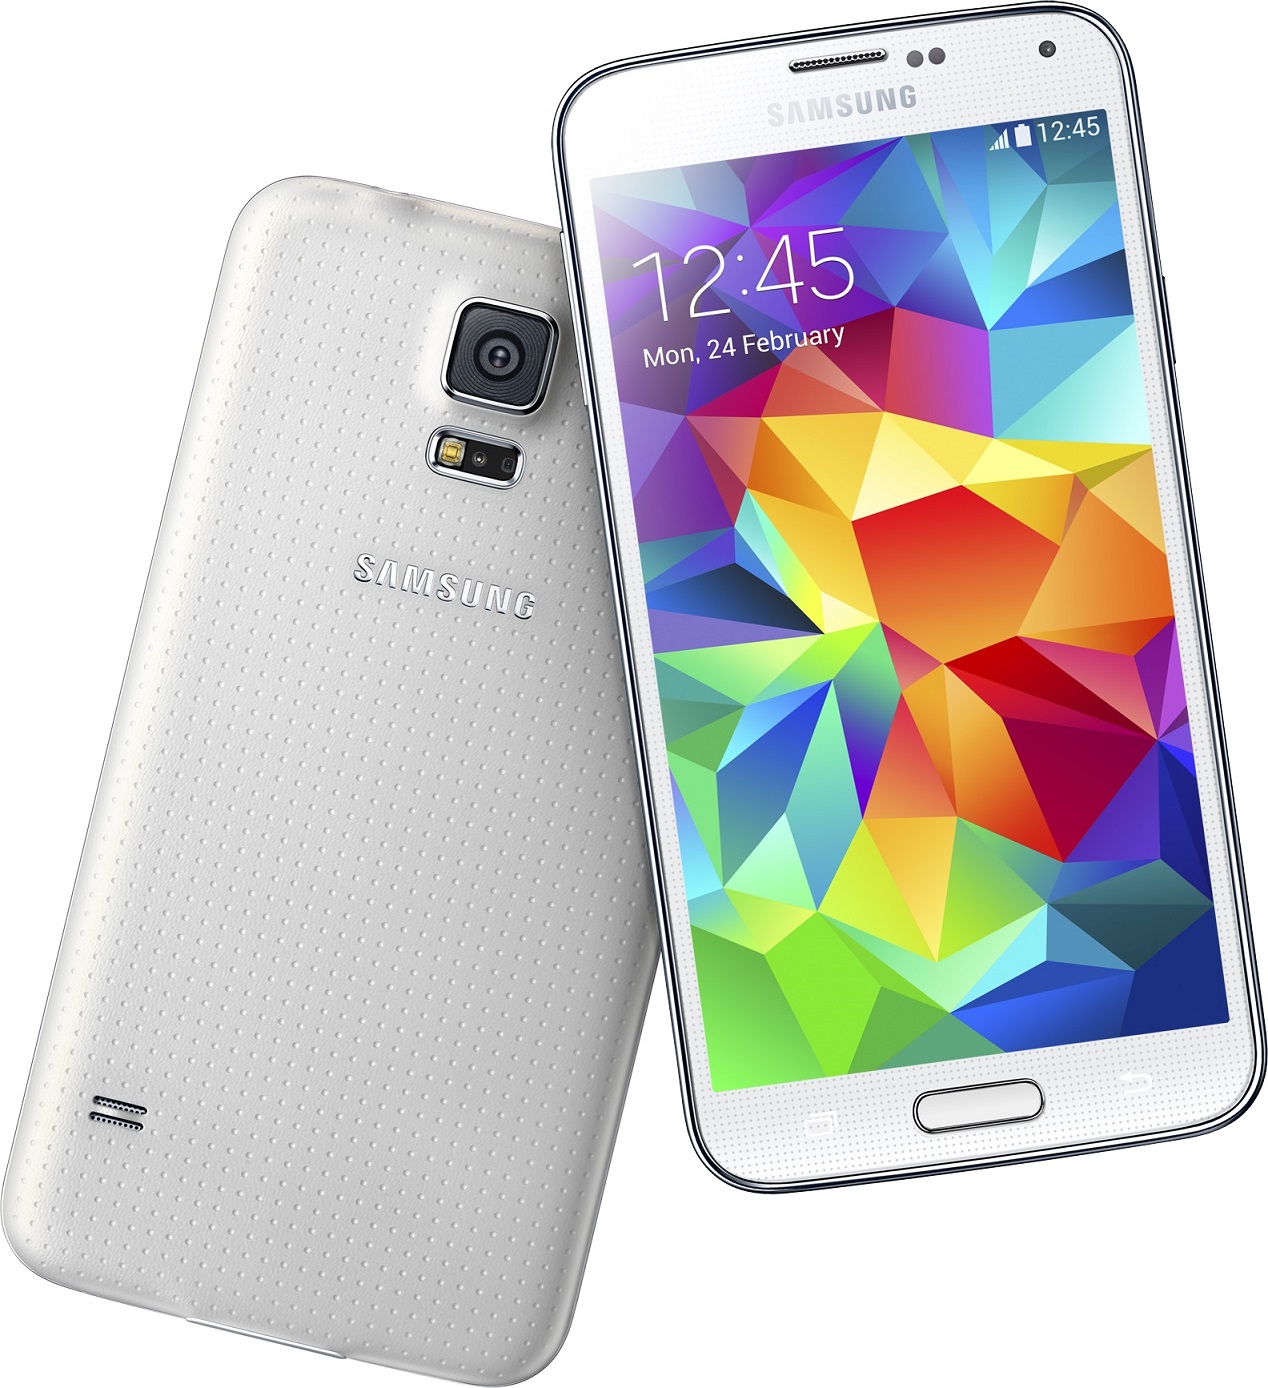 Mobilný telefón Samsung Galaxy S5 Neo Silver